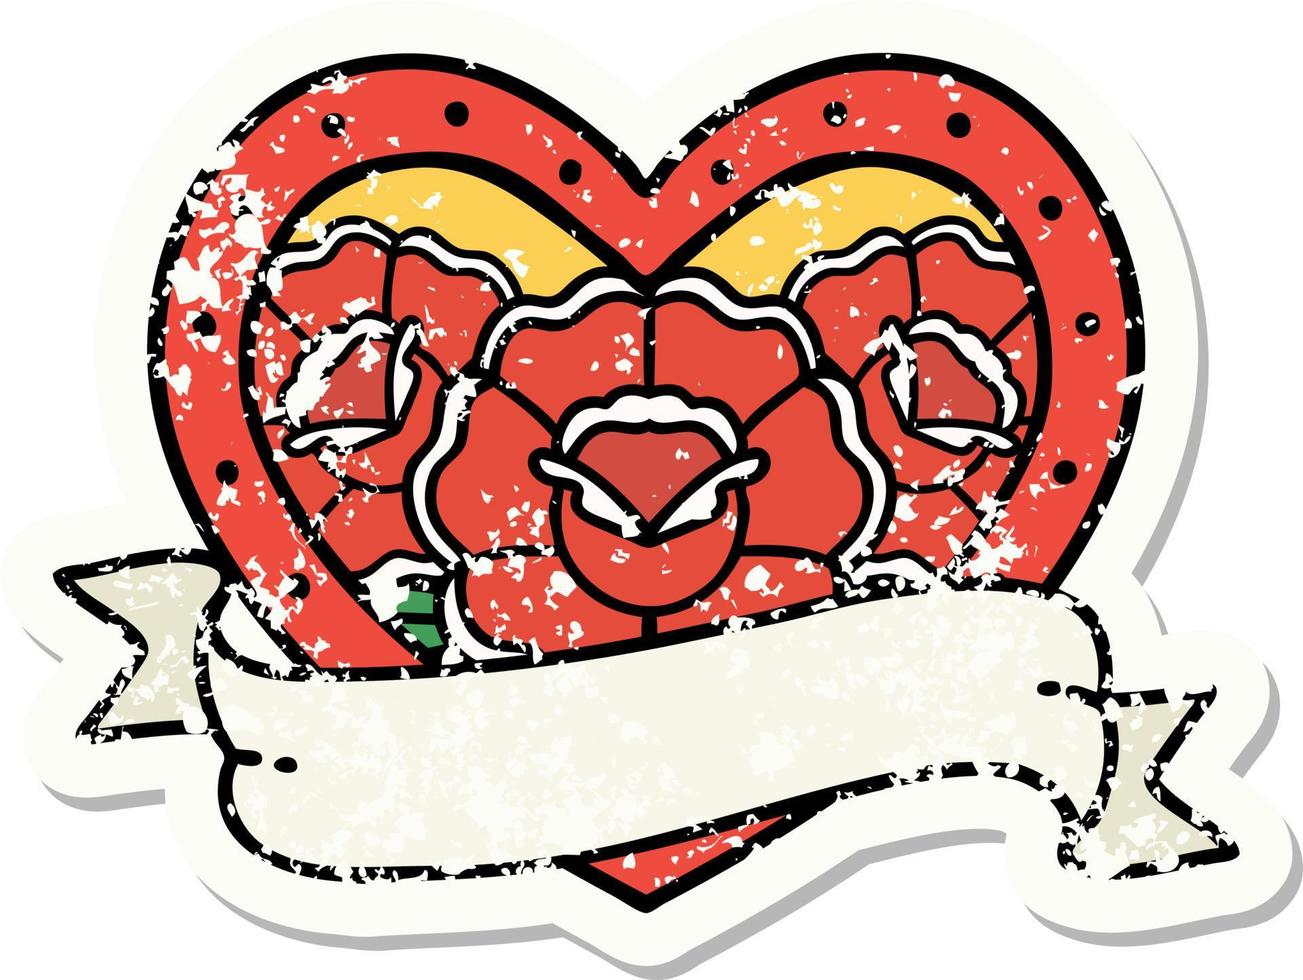 tatuagem de adesivo angustiado em estilo tradicional de um coração e banner com flores vetor